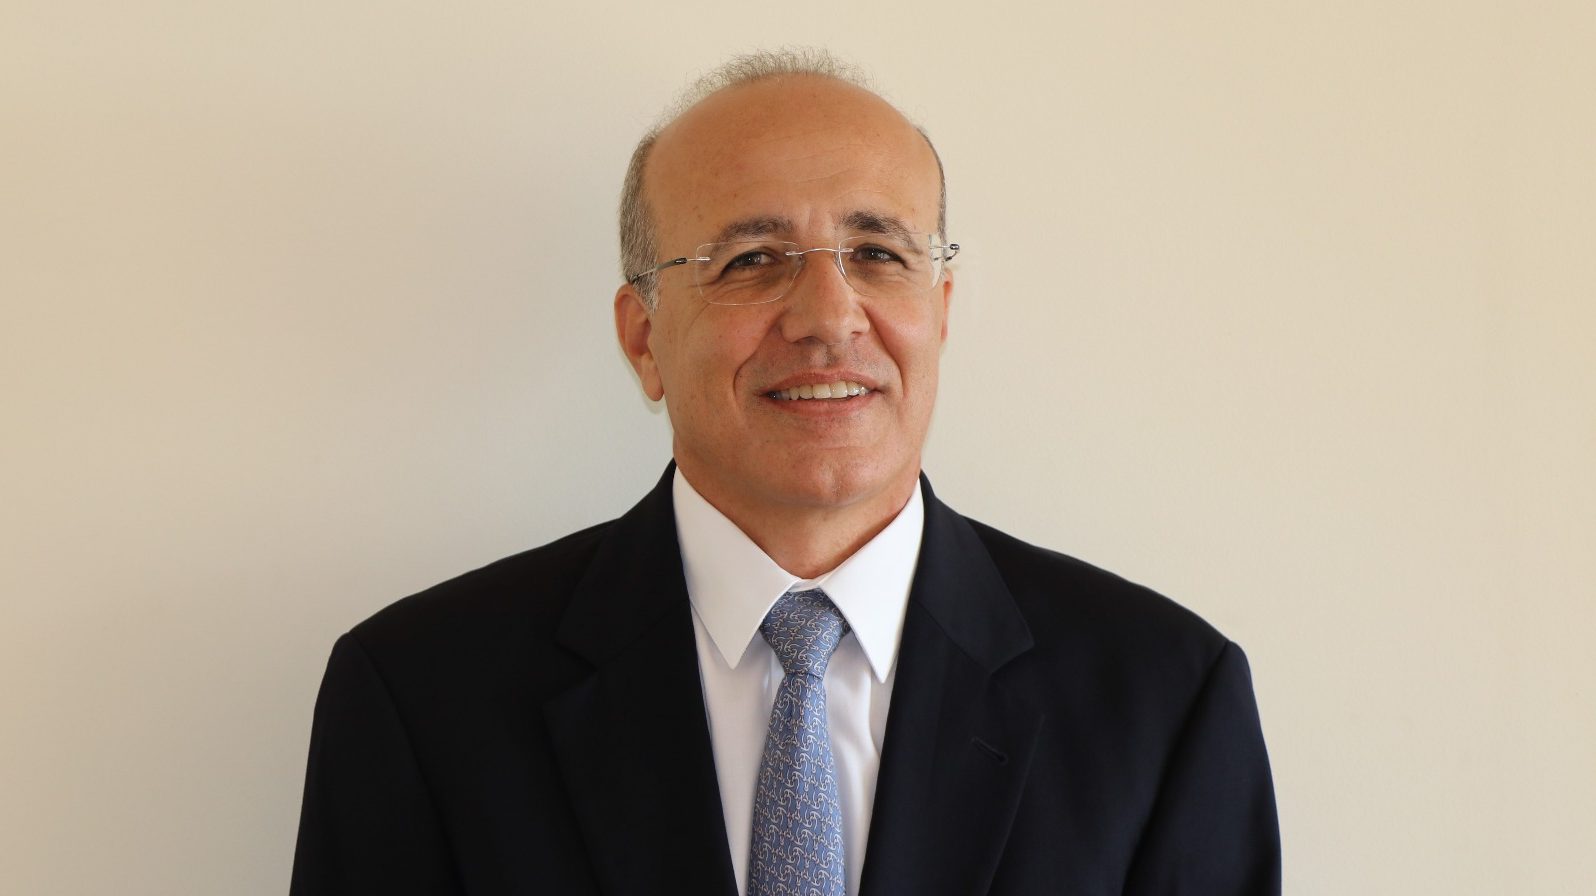 ד"ר משה ברקת: אין עדות לריכוזיות מופרזת בגופים המוסדיים בשוק הישראלי